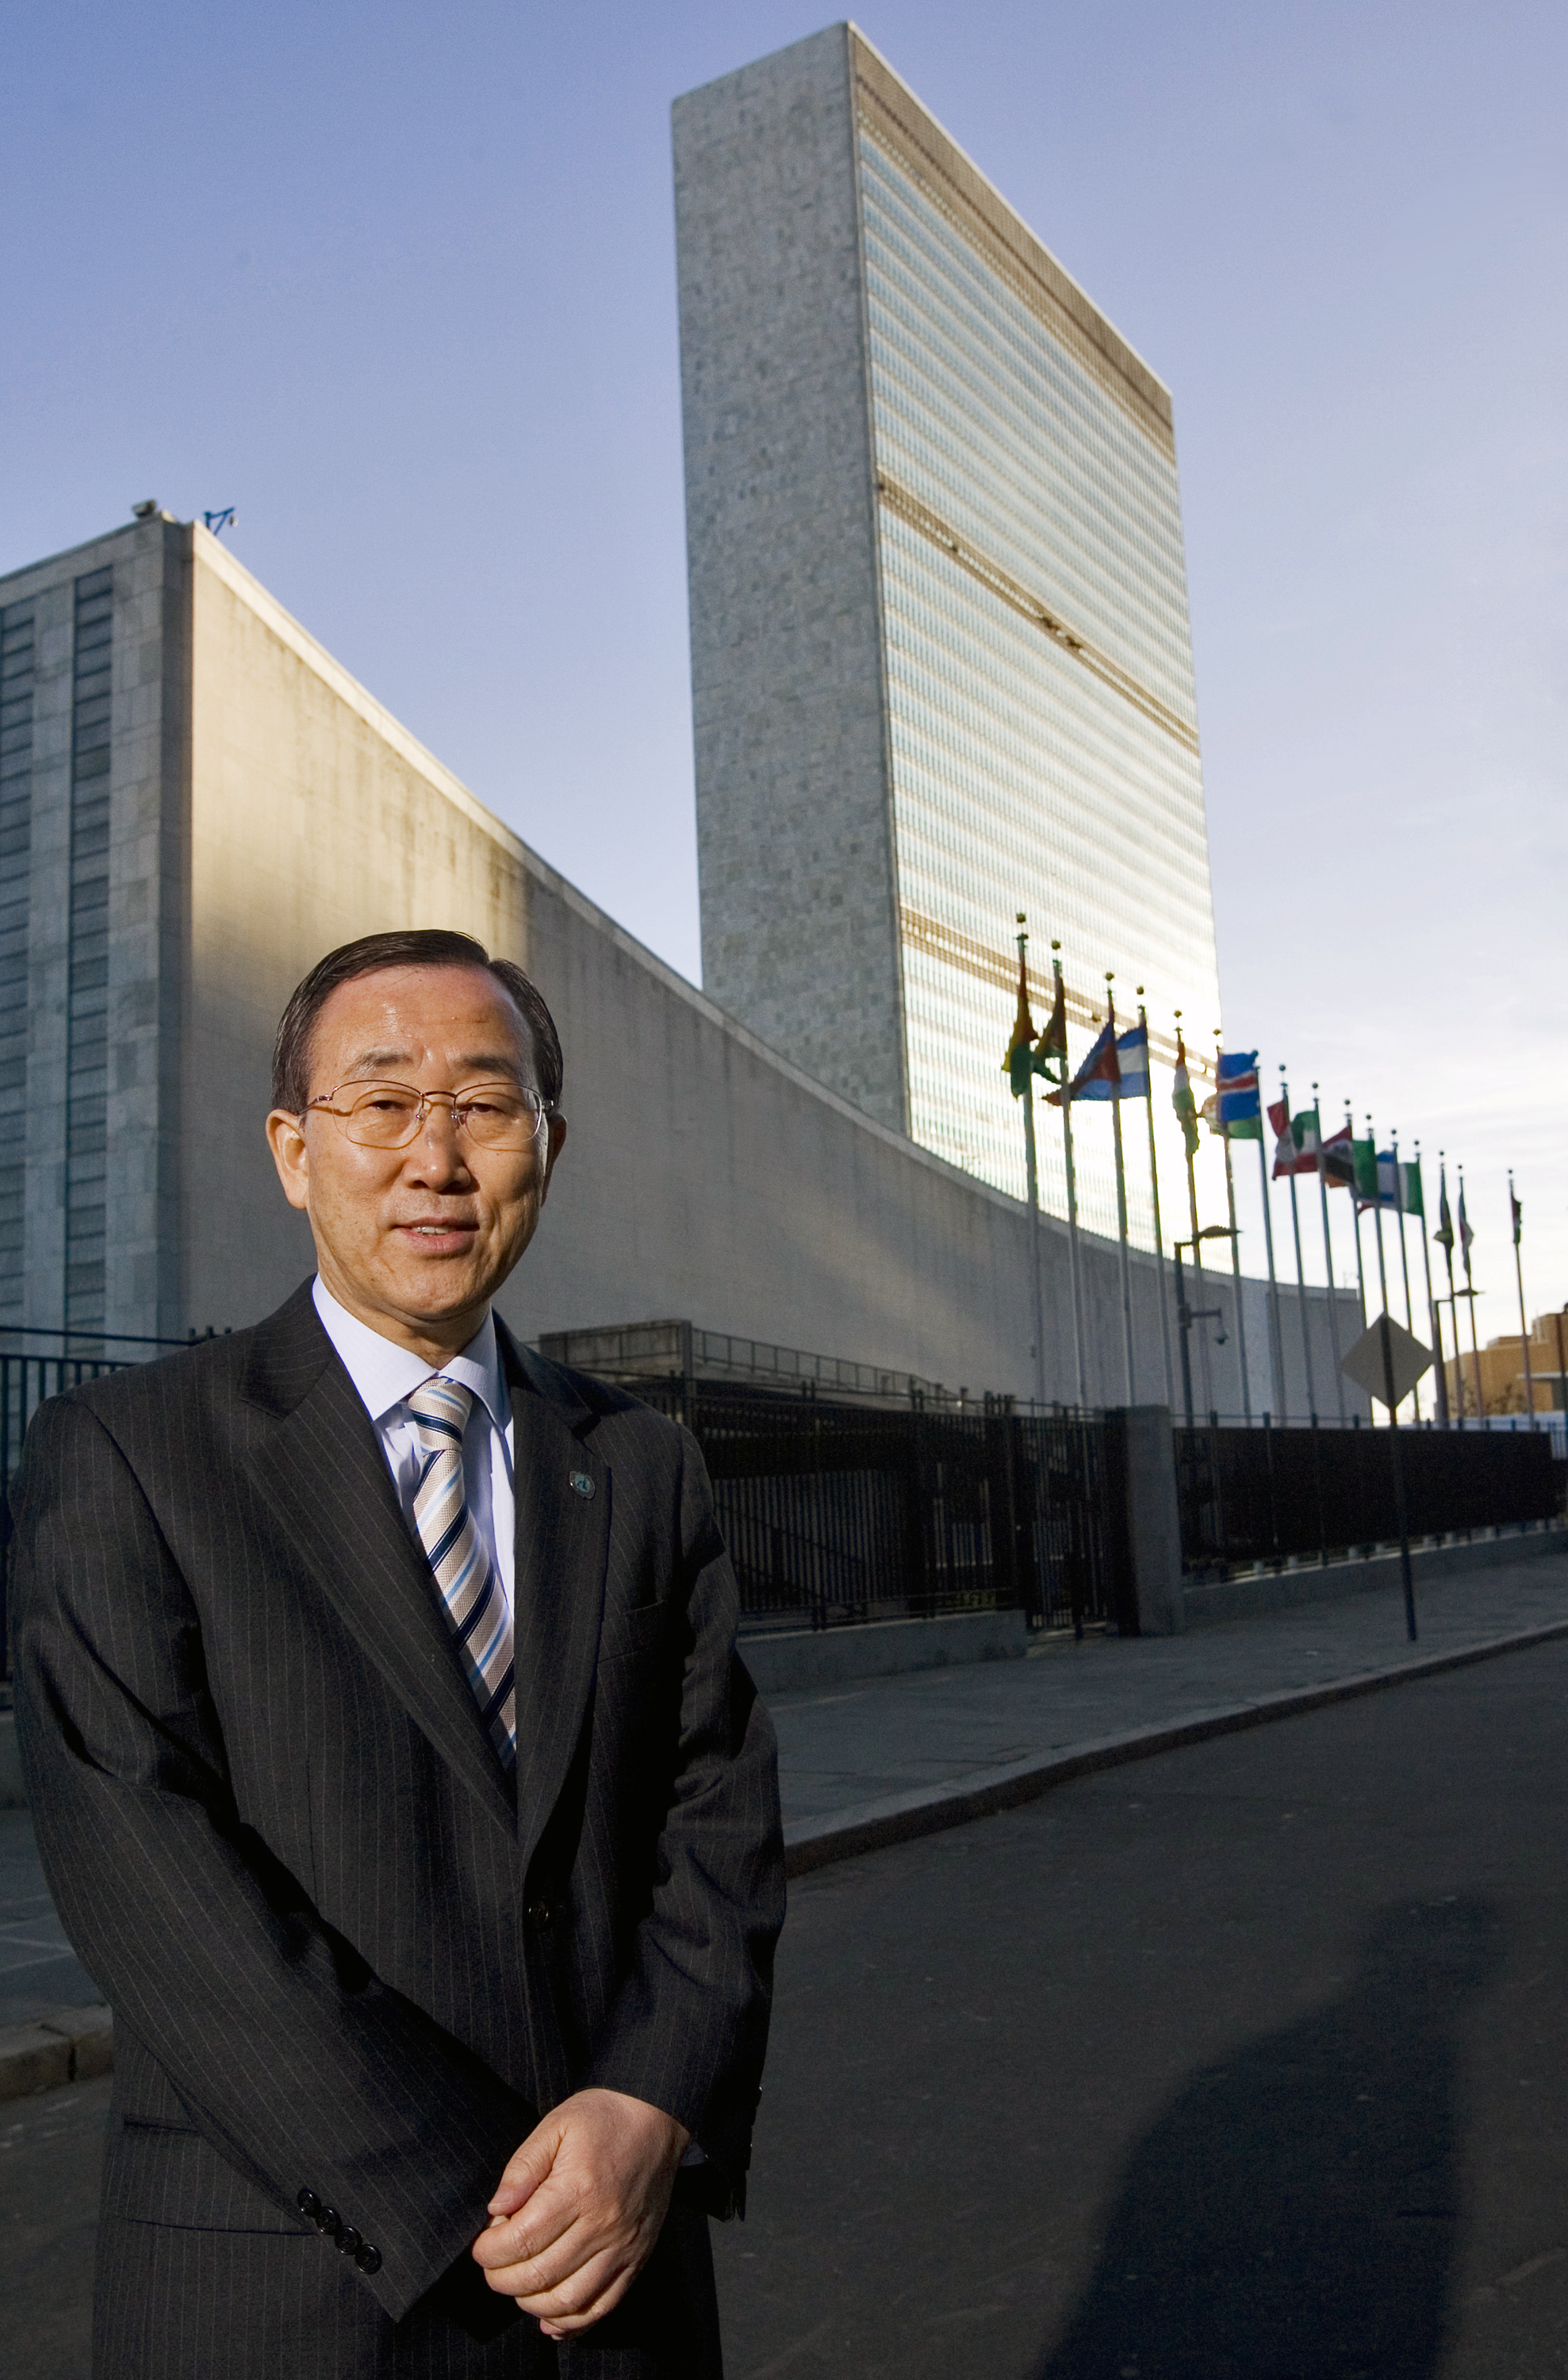 Ban Ki-Moon in 2007